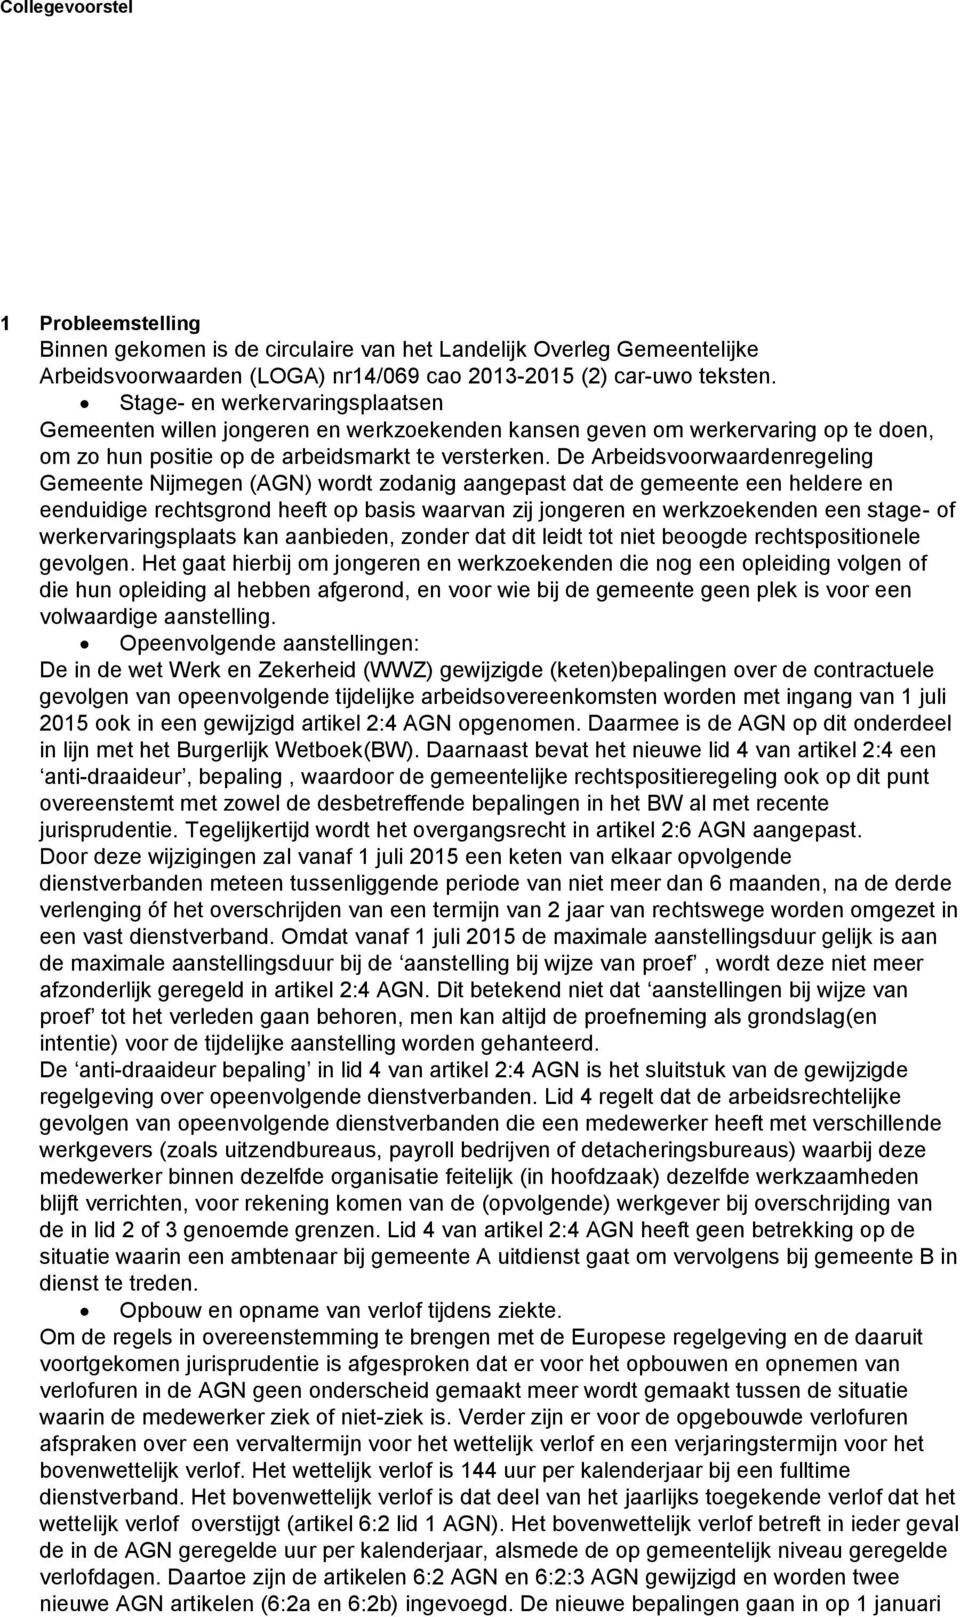 De Arbeidsvoorwaardenregeling Gemeente Nijmegen (AGN) wordt zodanig aangepast dat de gemeente een heldere en eenduidige rechtsgrond heeft op basis waarvan zij jongeren en werkzoekenden een stage- of